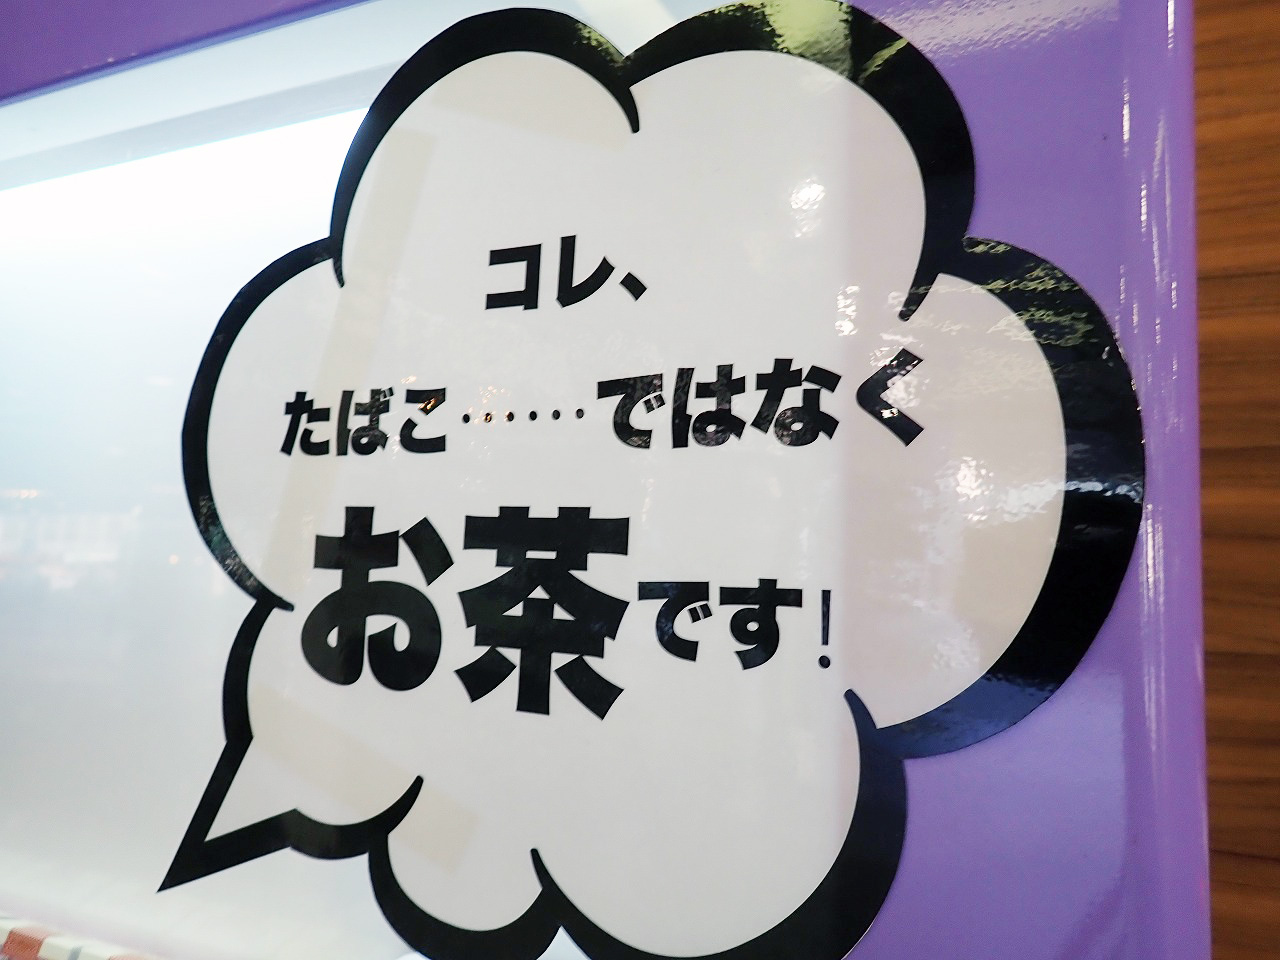 本川越駅の自動販売機で販売している「チャバコ」